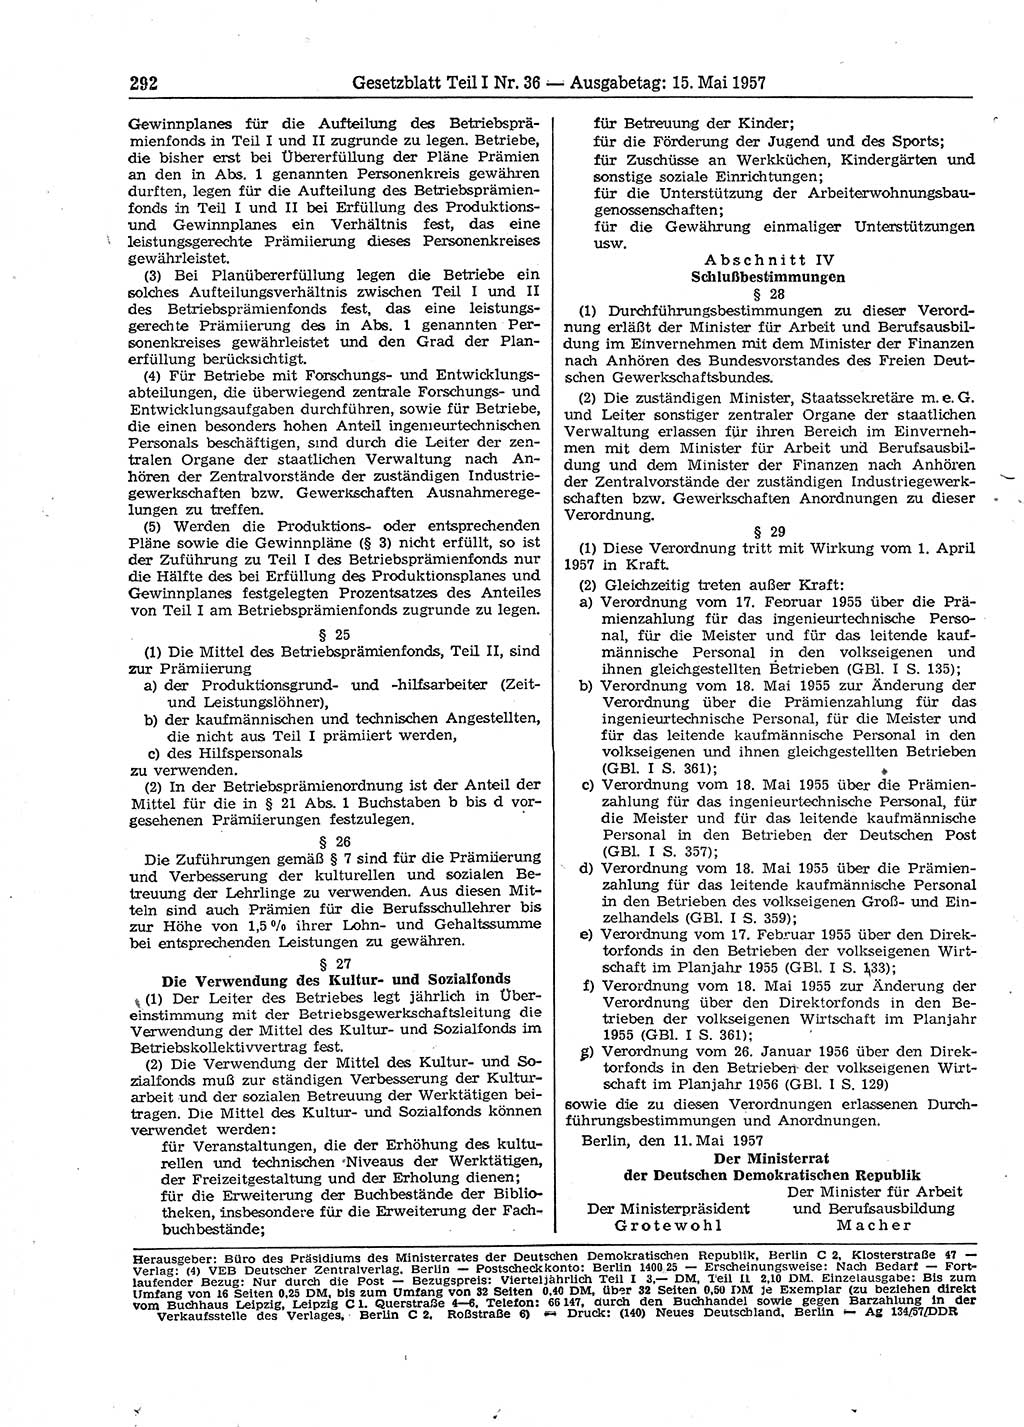 Gesetzblatt (GBl.) der Deutschen Demokratischen Republik (DDR) Teil Ⅰ 1957, Seite 292 (GBl. DDR Ⅰ 1957, S. 292)